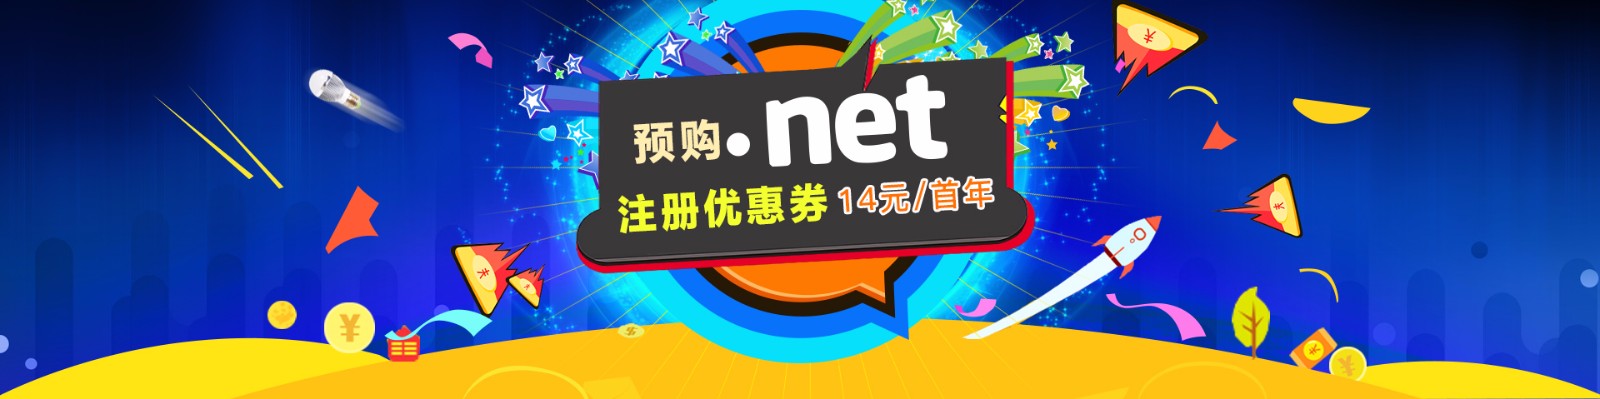 net13